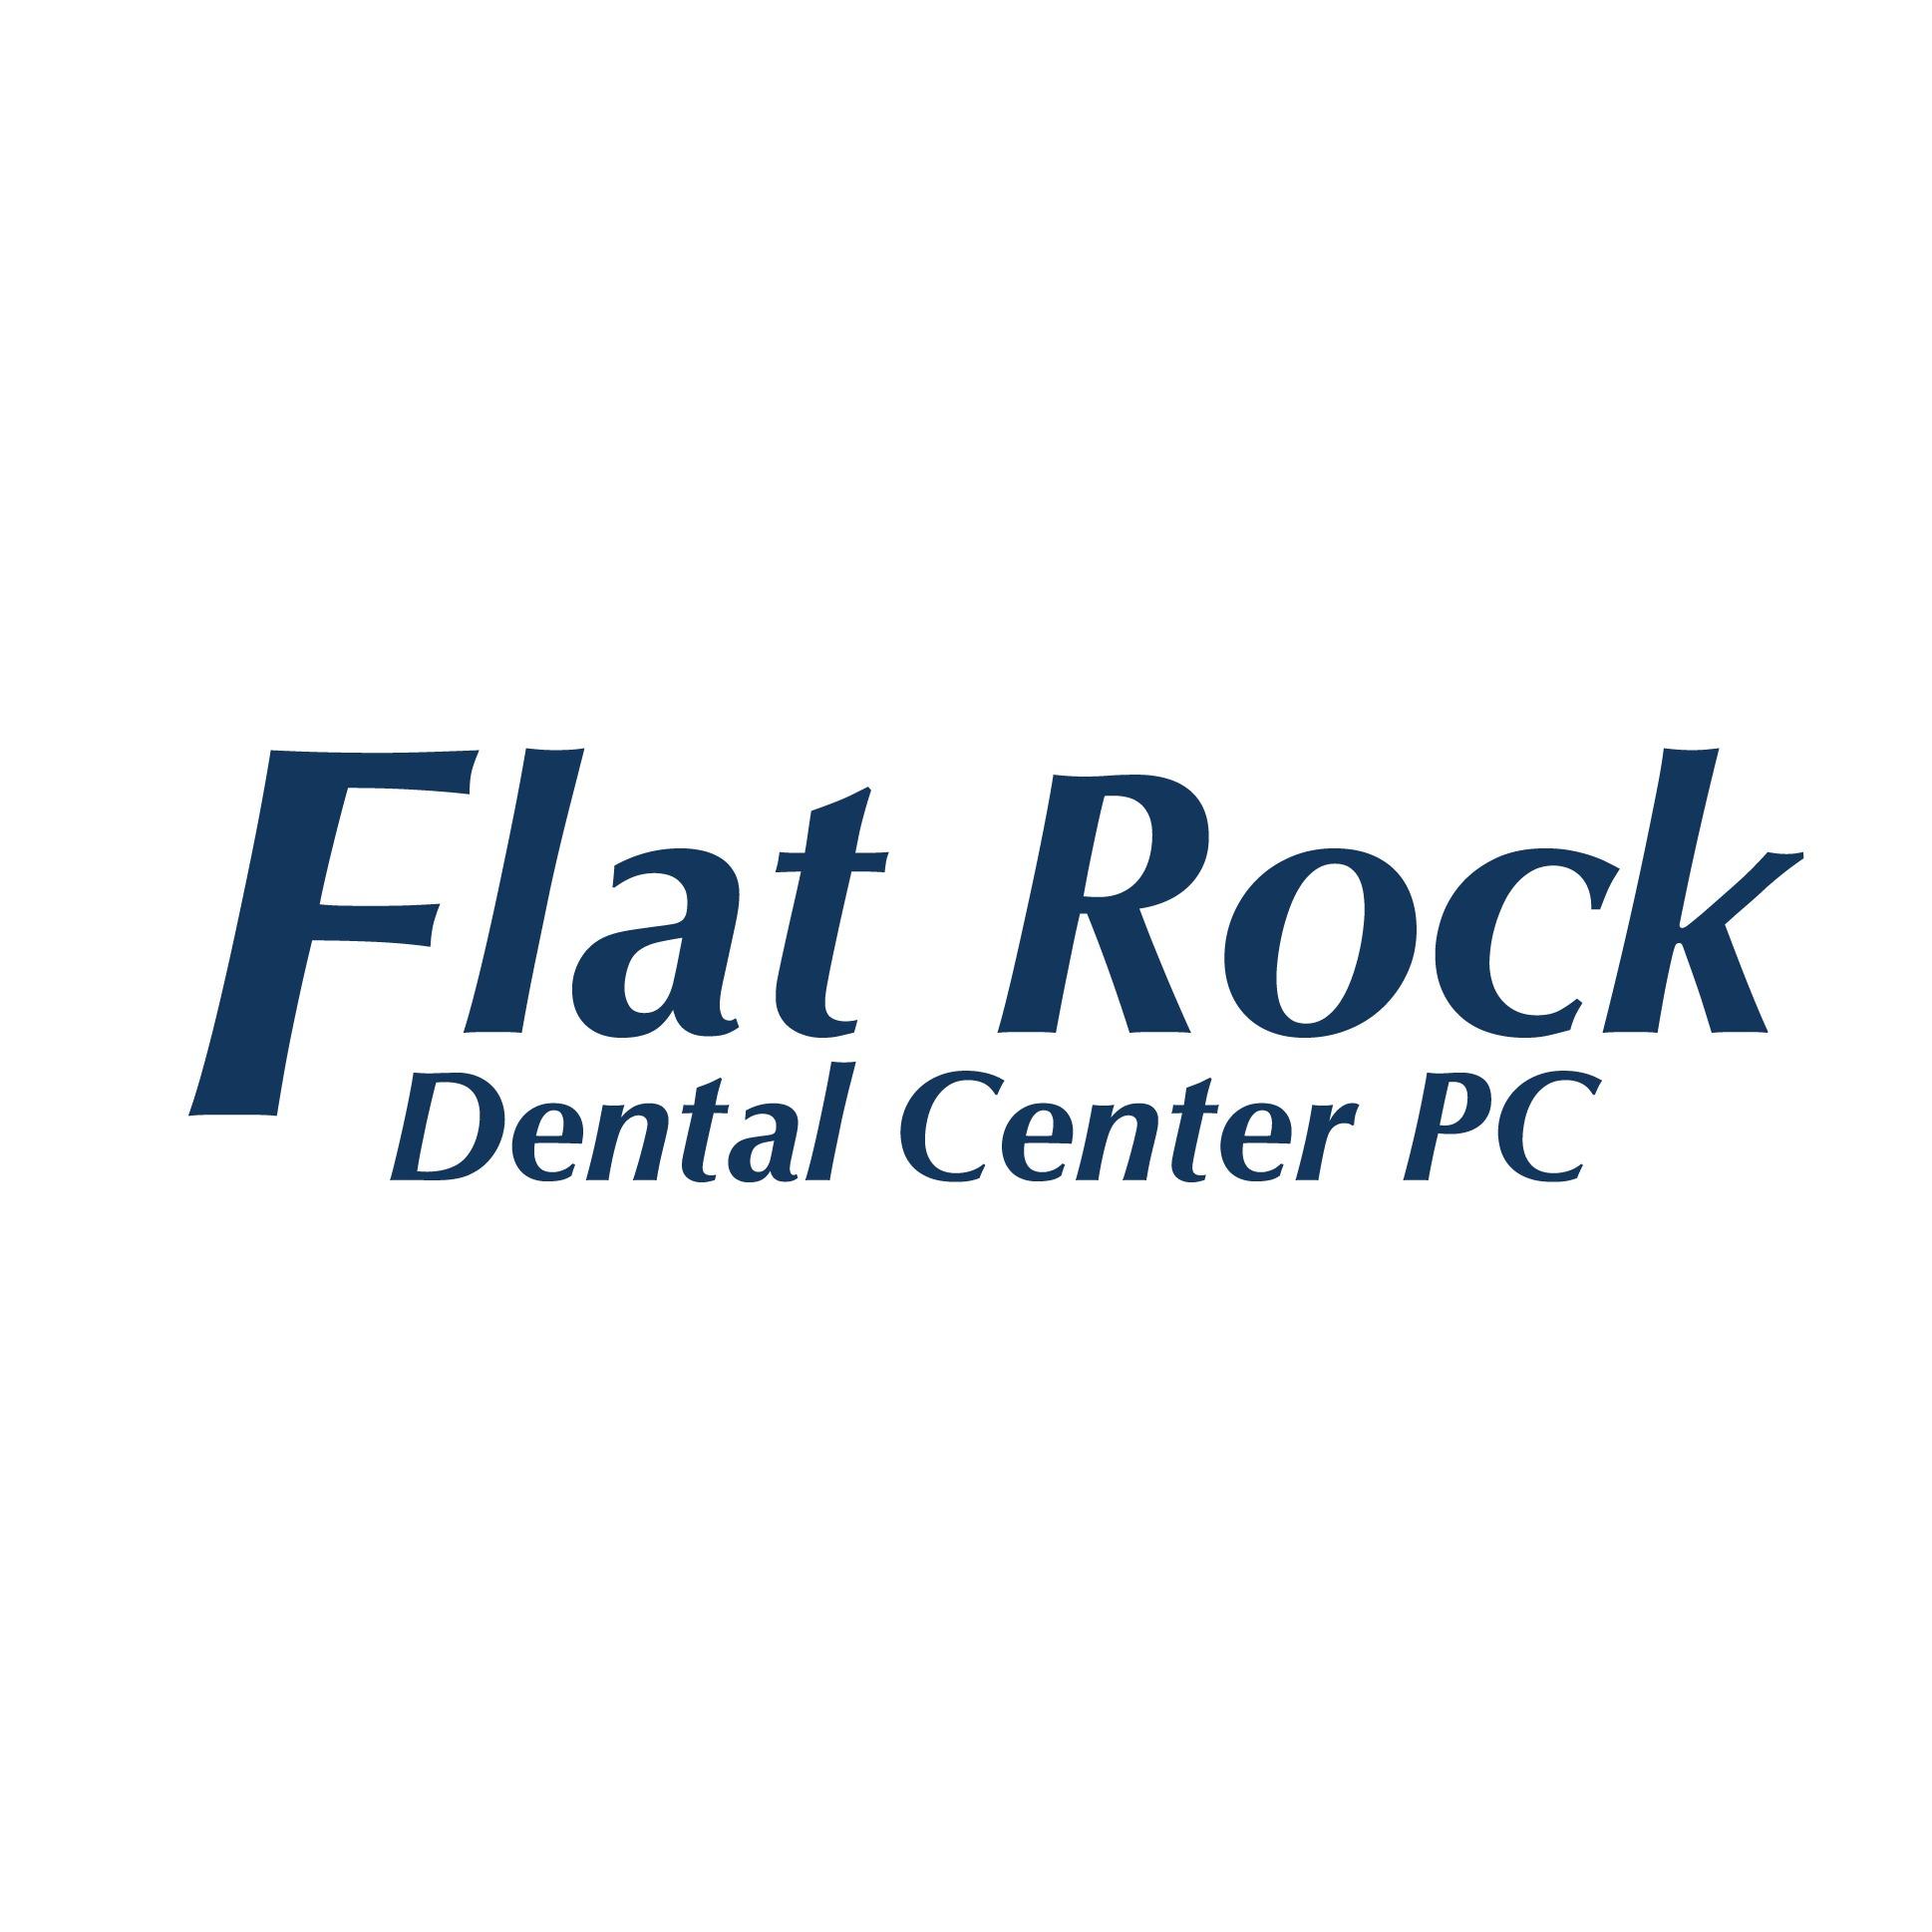 Flat Rock Dental Center